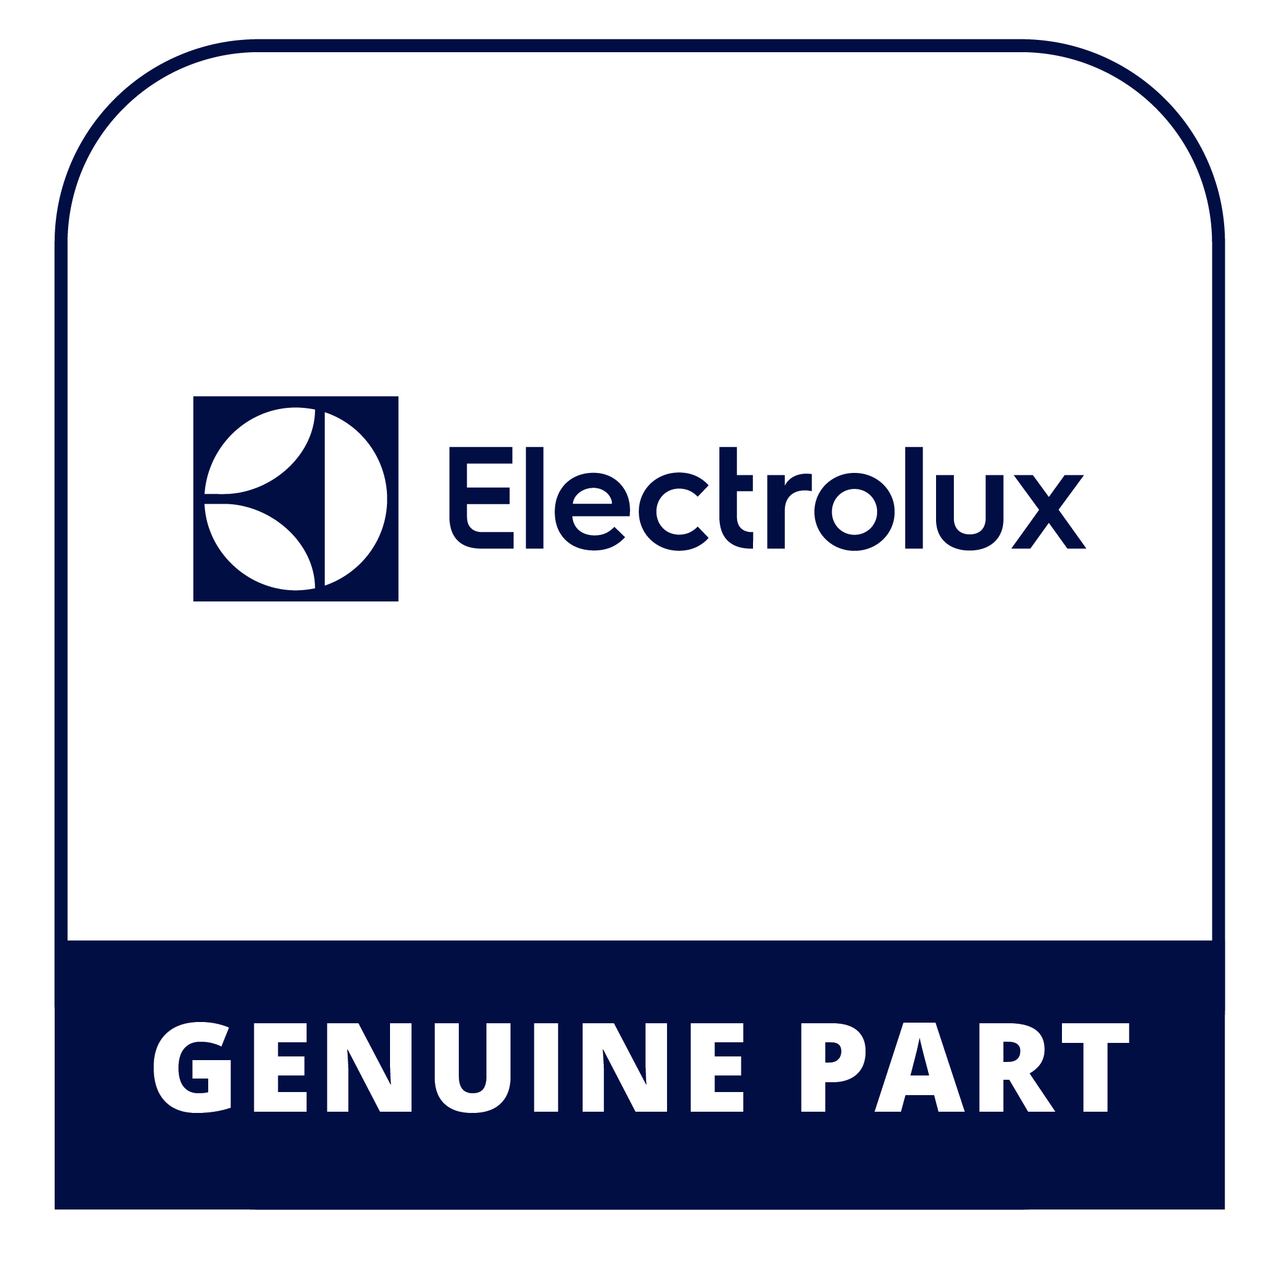 Frigidaire - Electrolux 318004902 - Switch - Genuine Electrolux Part